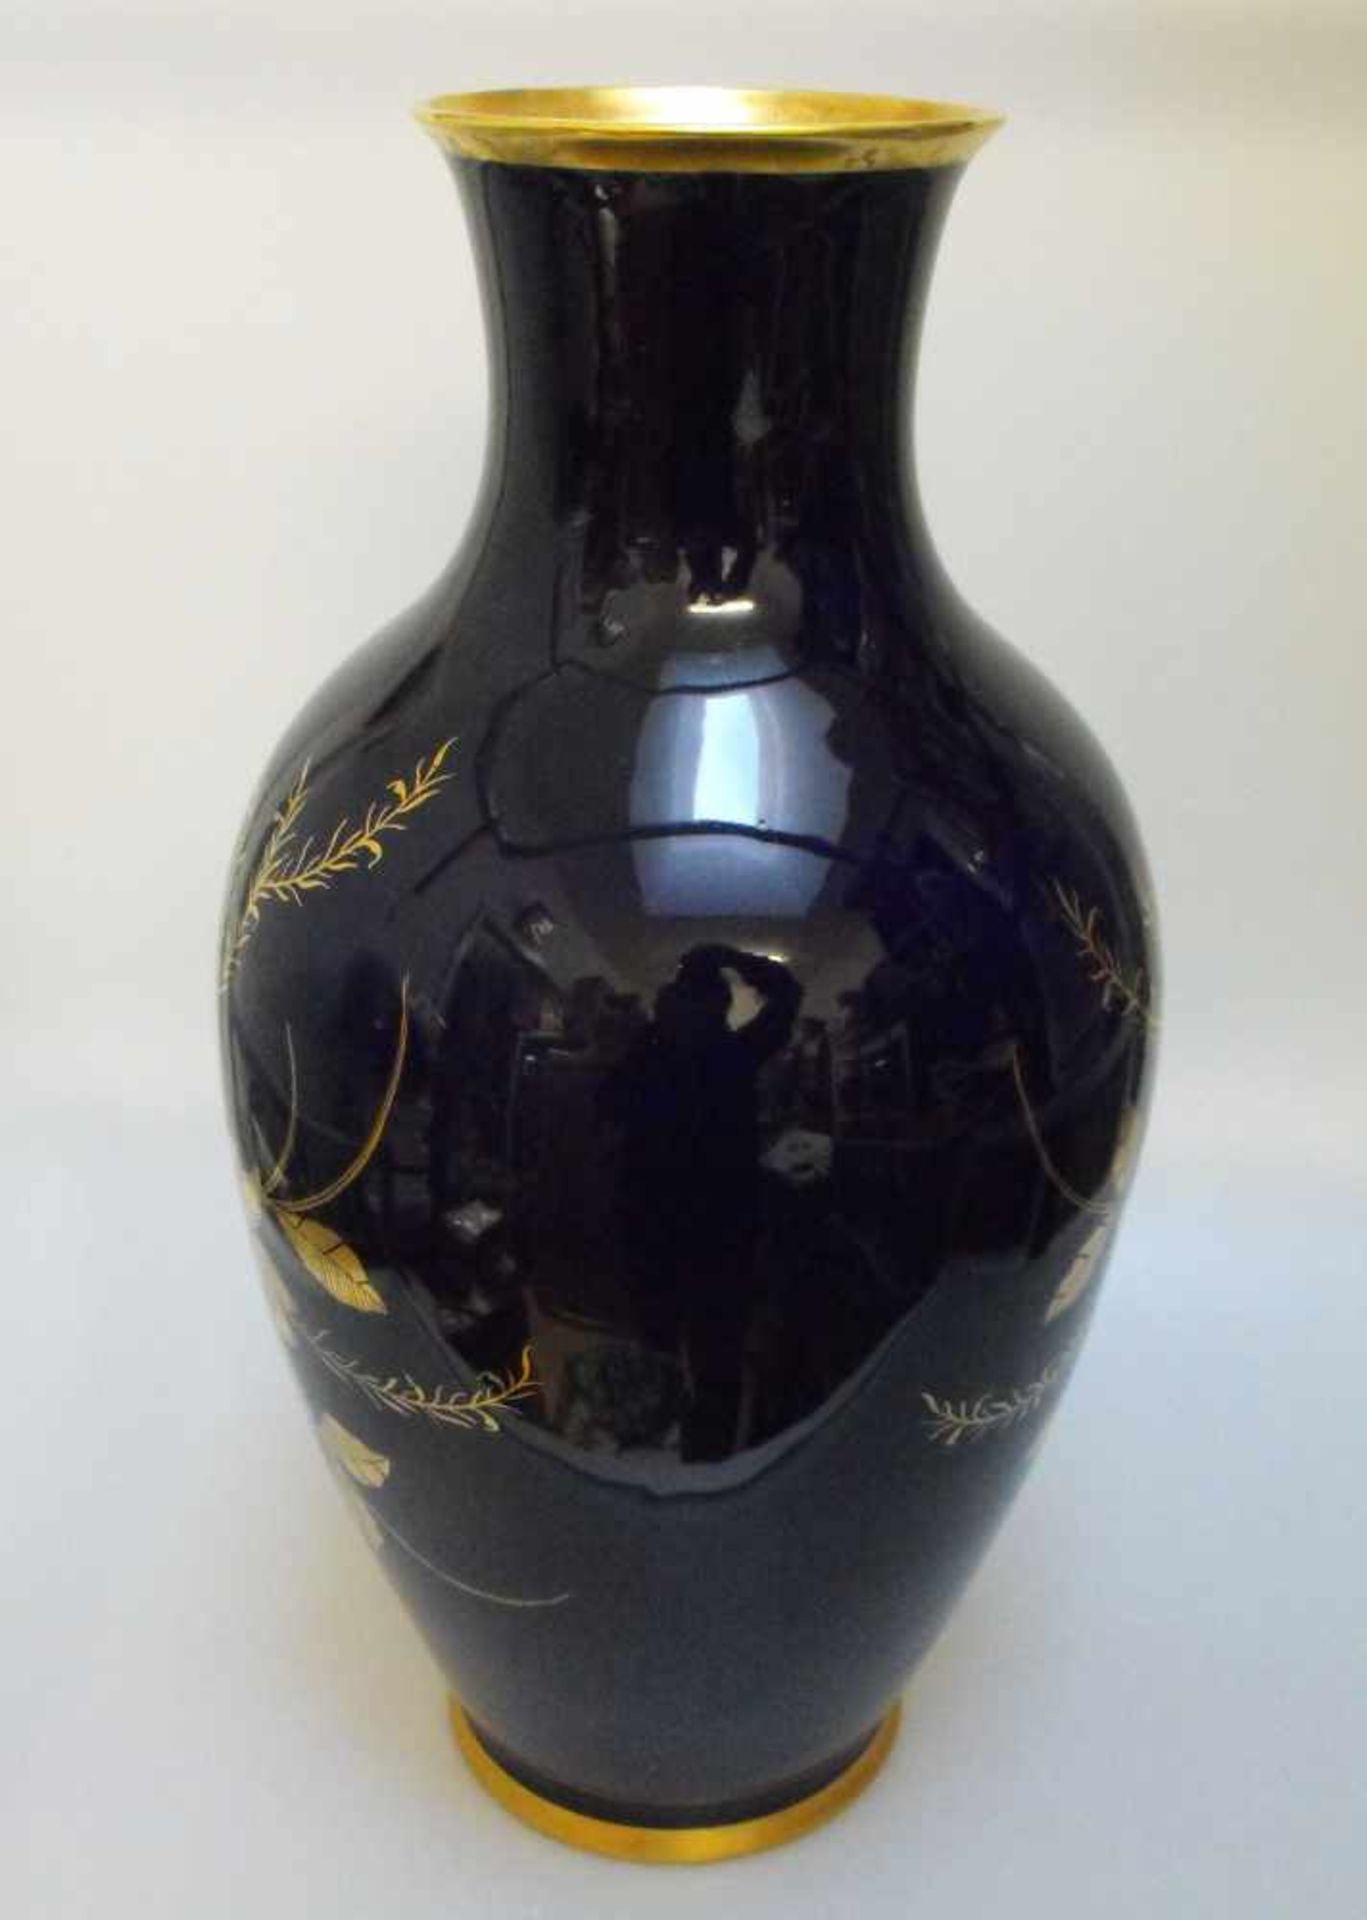 Lindner Bodenvase Vase Kobalt Gold Blau Porzellan Rarität Handarbeit Made in Germany - Bild 3 aus 3